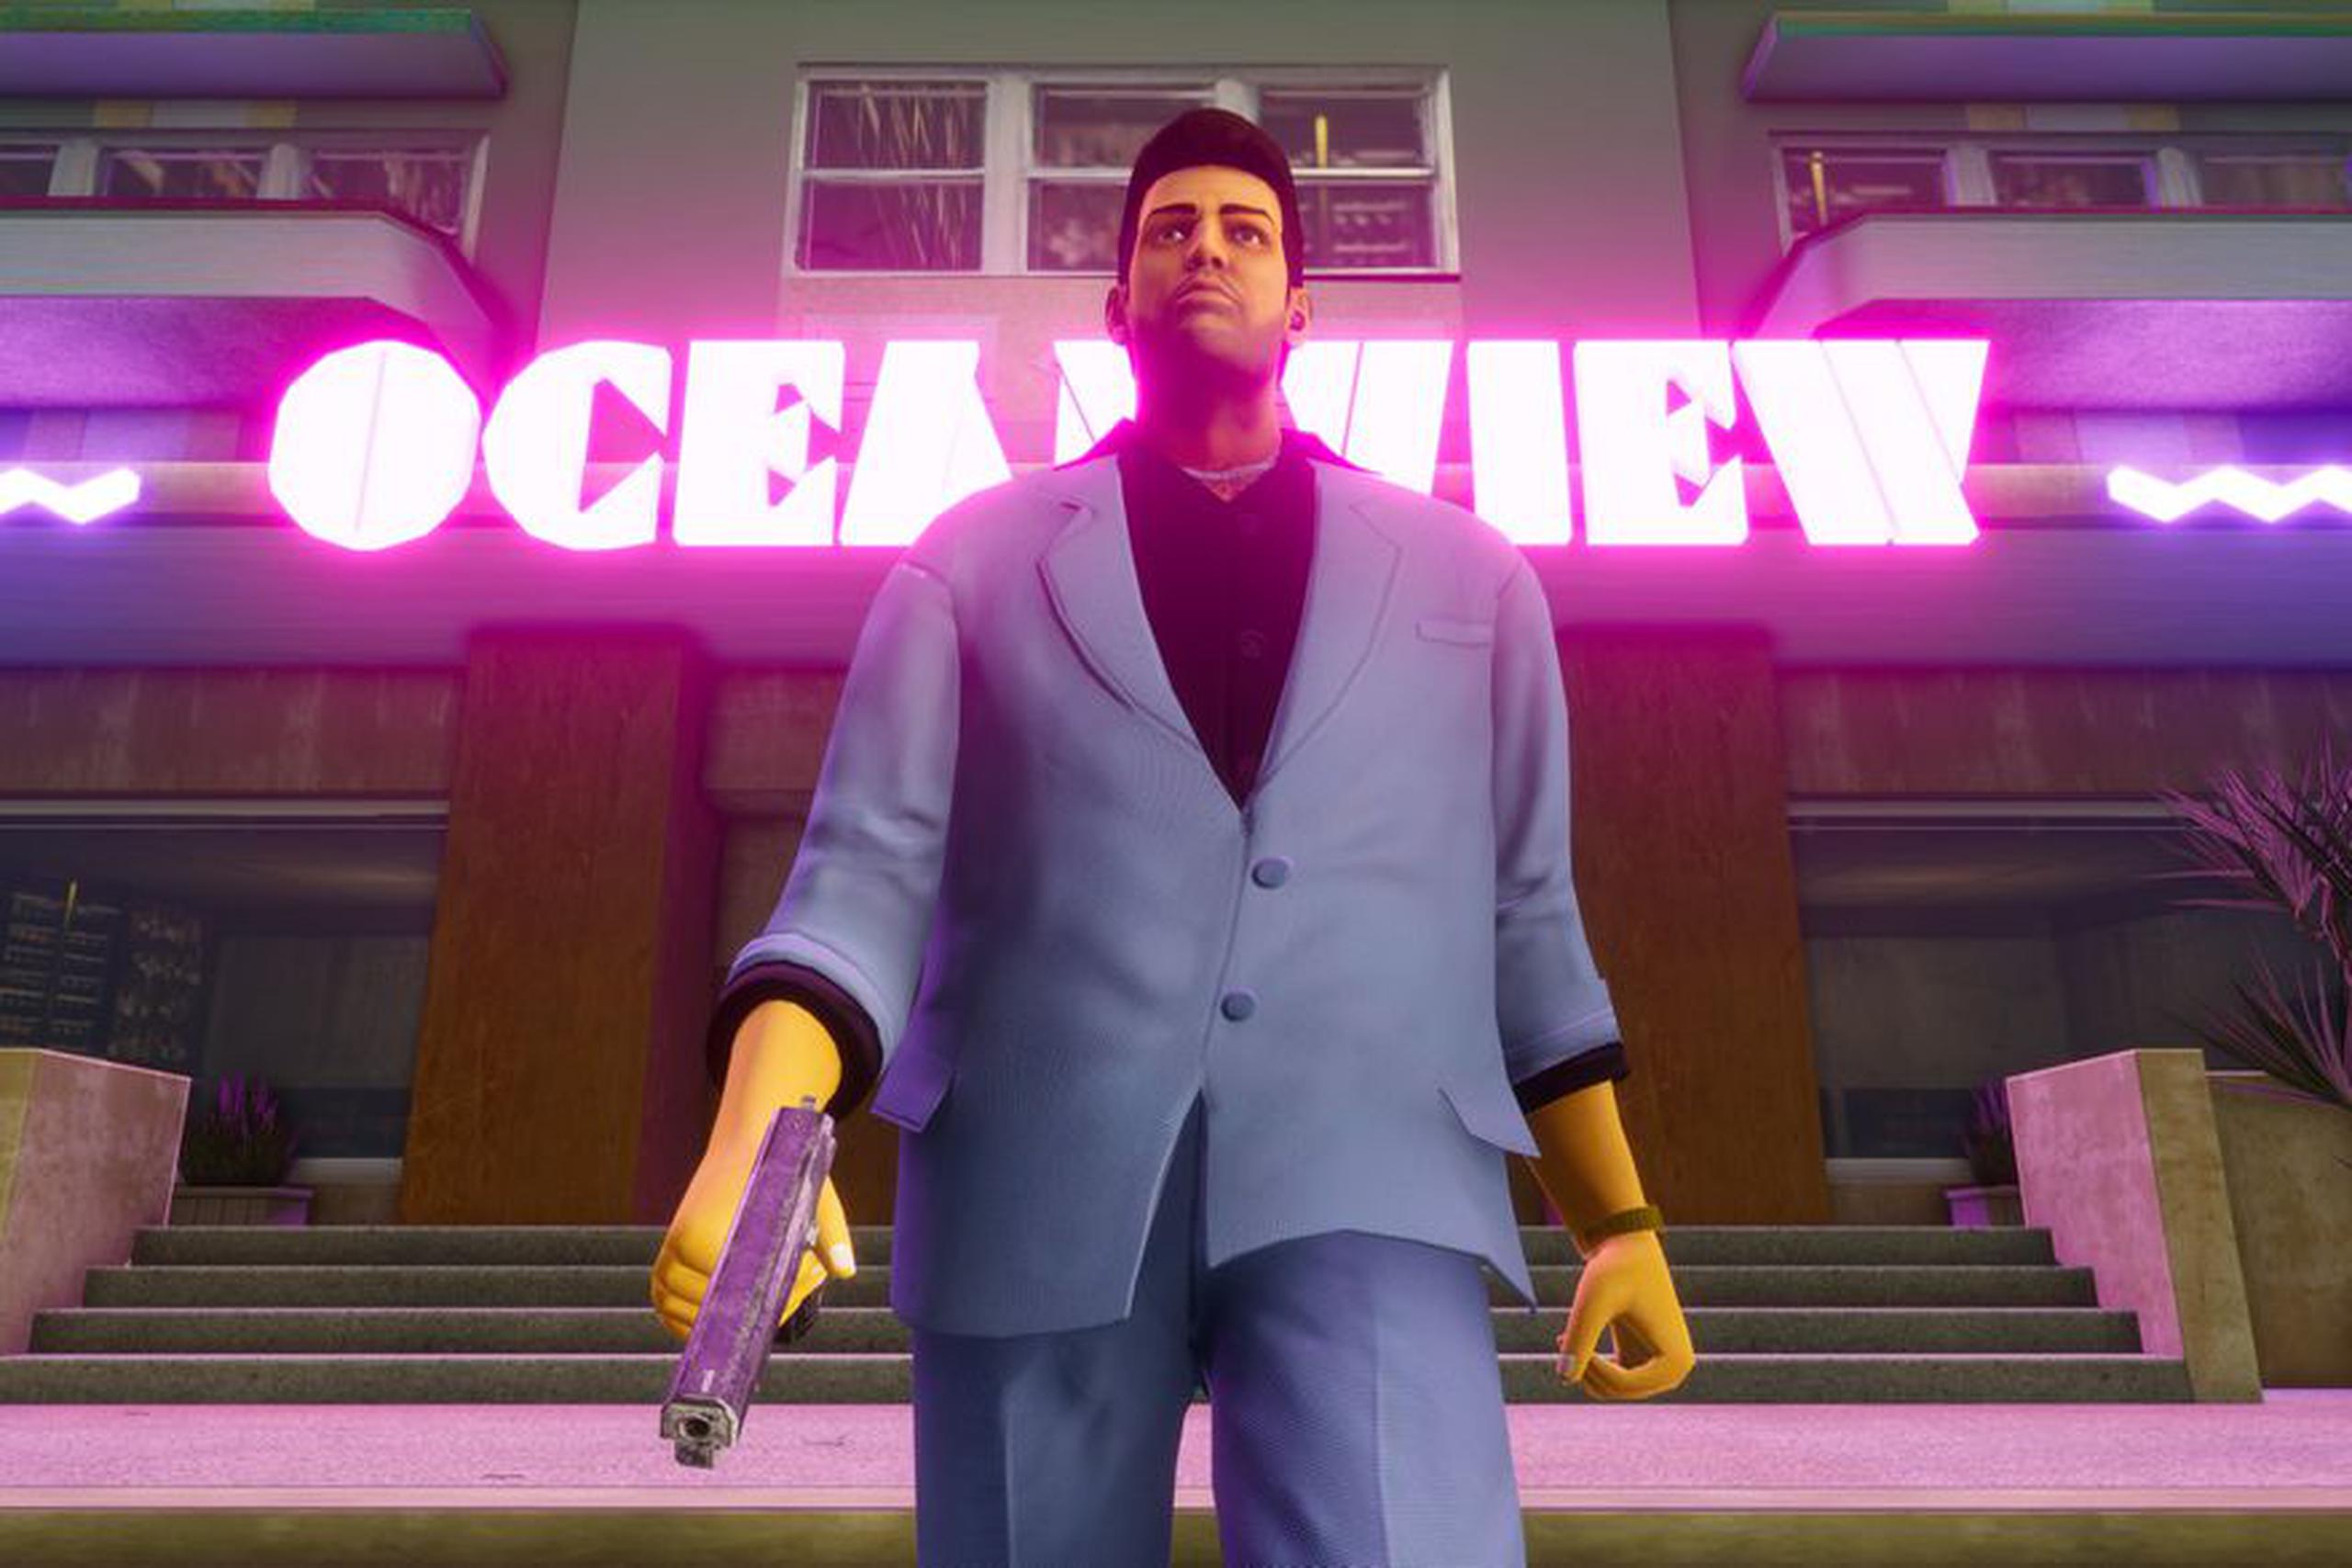 El lanzamiento de la trilogía se marca a 20 años de lanzarse Grand Theft Auto III, uno de los primeros juegos de mundo abierto que permitió a los jugadores tomar decisiones libremente como figuras criminales.